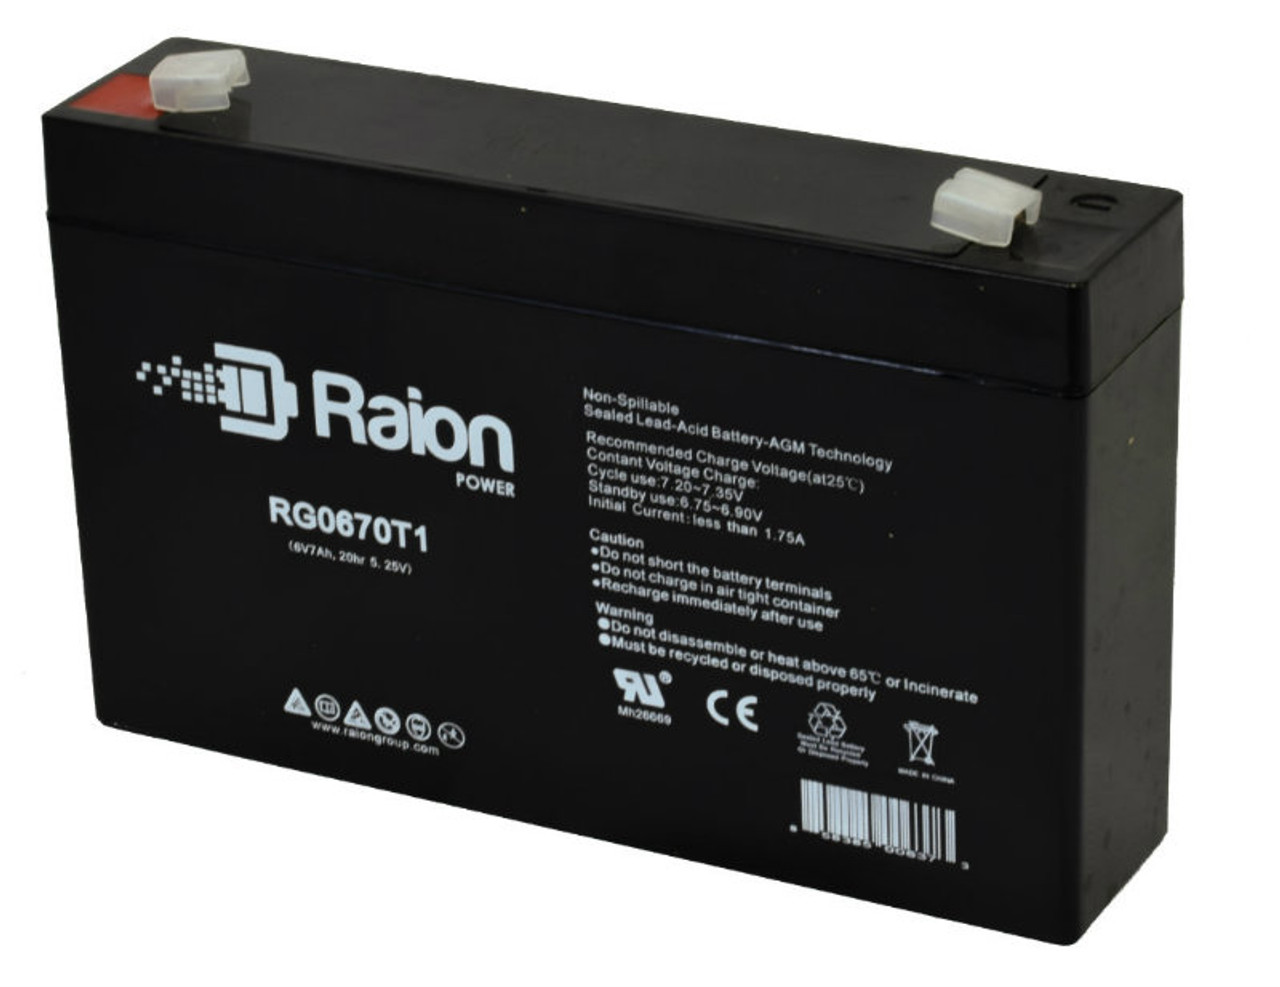 Raion Power RG0670T1 6V 7Ah Replacement Emergency Lighting Battery for Exide SRB-6V5